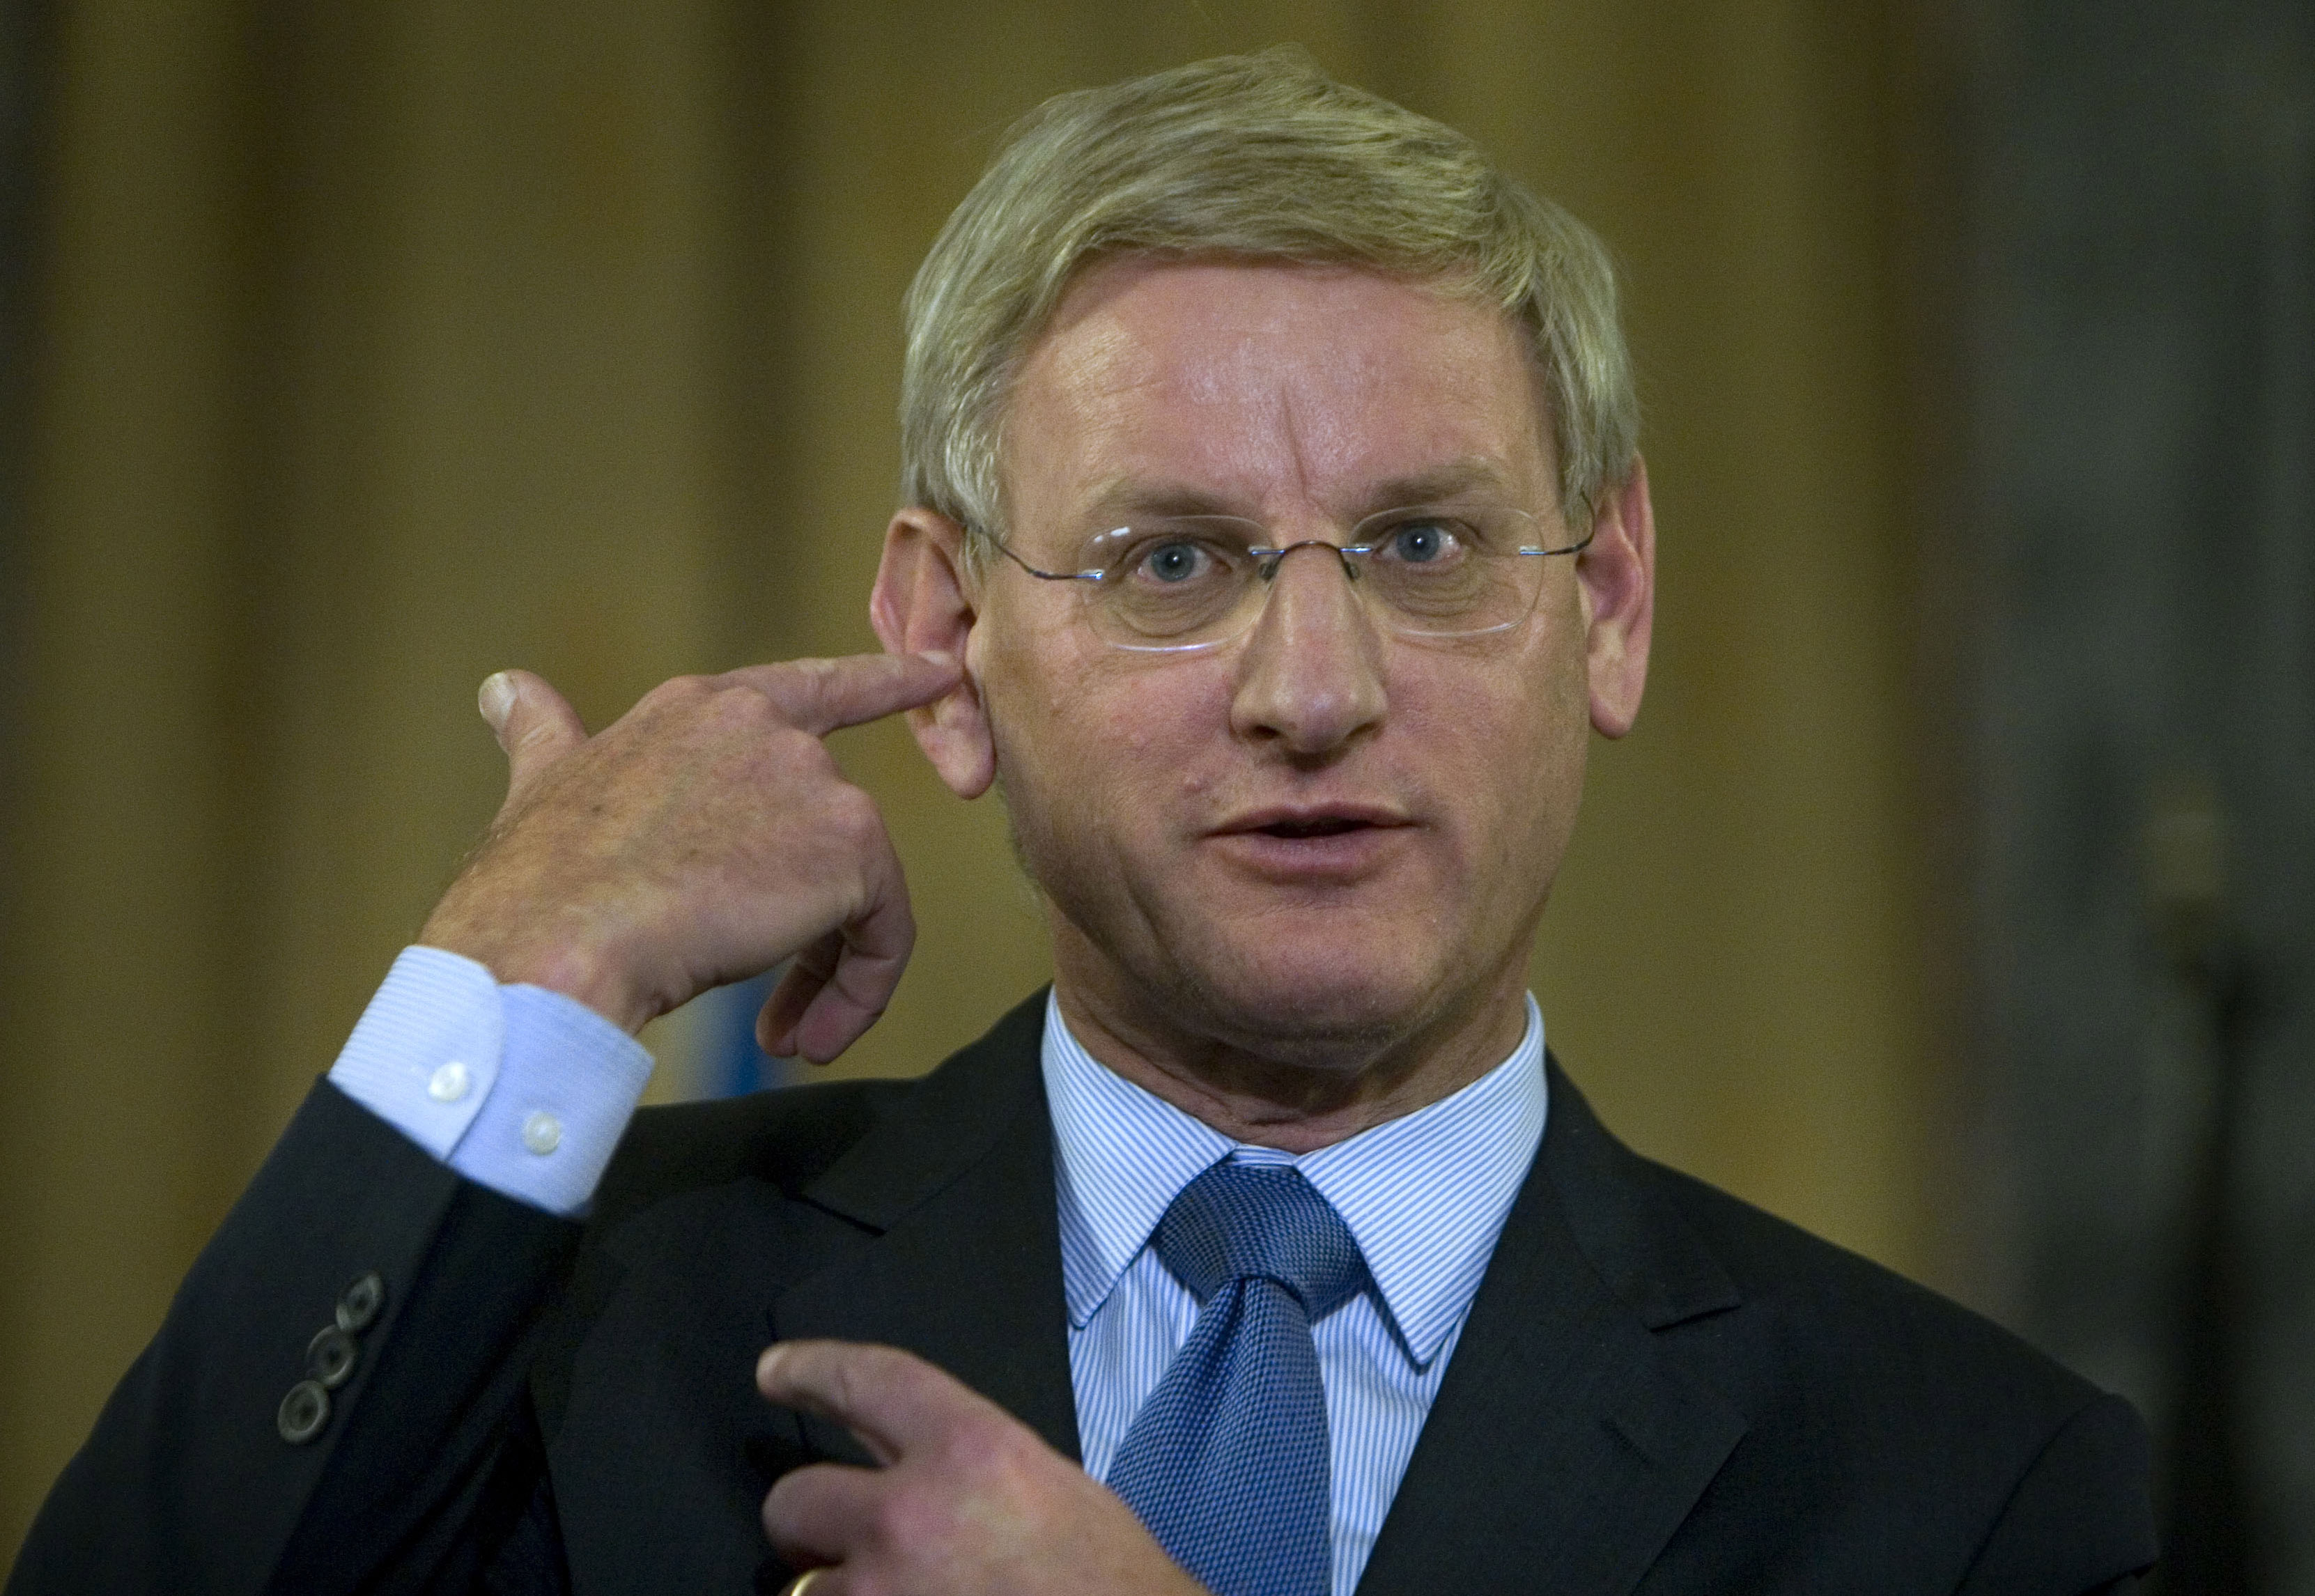 Carl Bildts uttalande fick stor uppmärksamhet. Det är dock oklart vad Sverige får för roll i en eventuell konflikt.